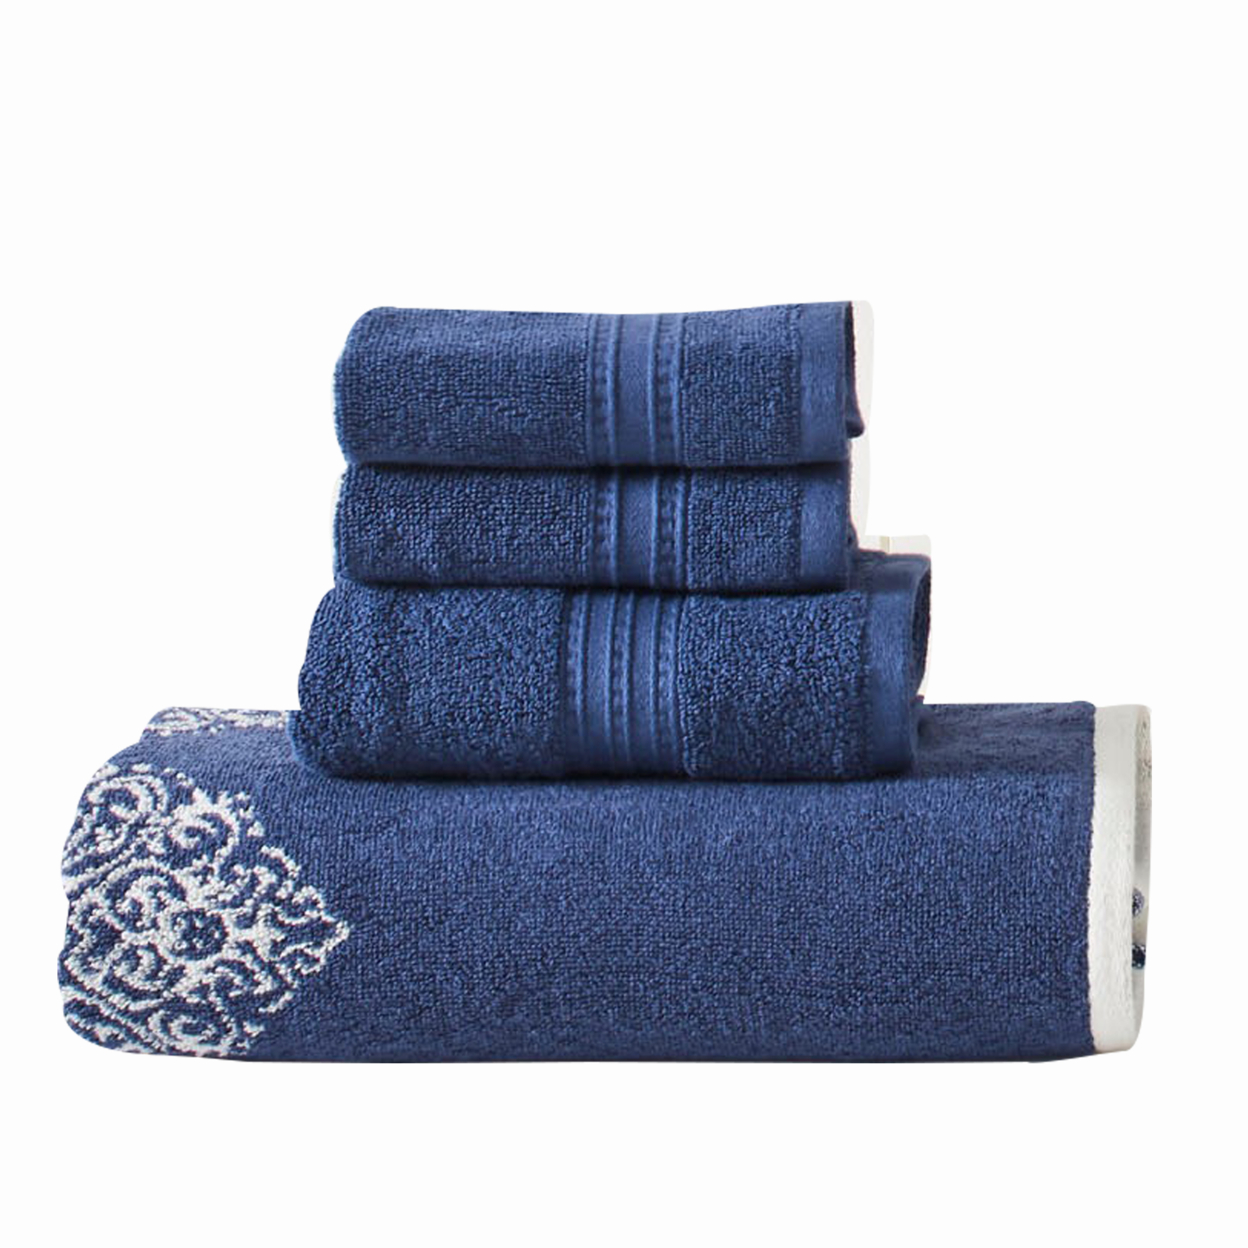 Eula Modern 6 Piece Cotton Towel Set, Stylish Damask Pattern, Deep Blue- Saltoro Sherpi